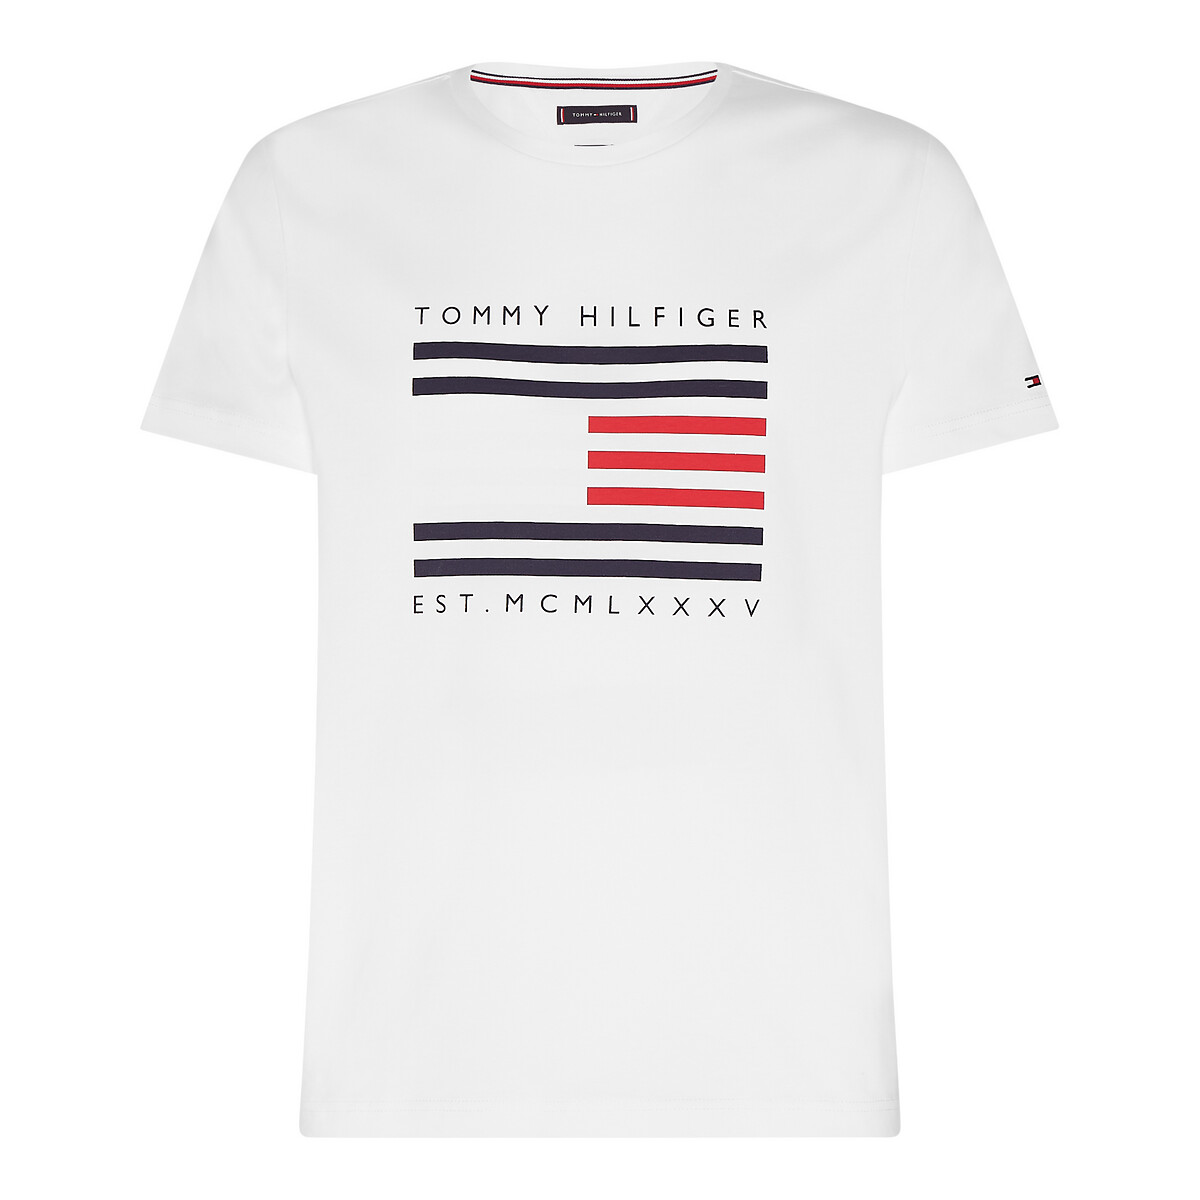 Tommy hilfiger usa. Футболка Tommy Hilfiger Tokyo Japan. Tommy Hilfiger Global Flag футболка серая. Tommy Hilfiger логотип на футболке. Логотип Tommy Hilfiger на футболке поло.